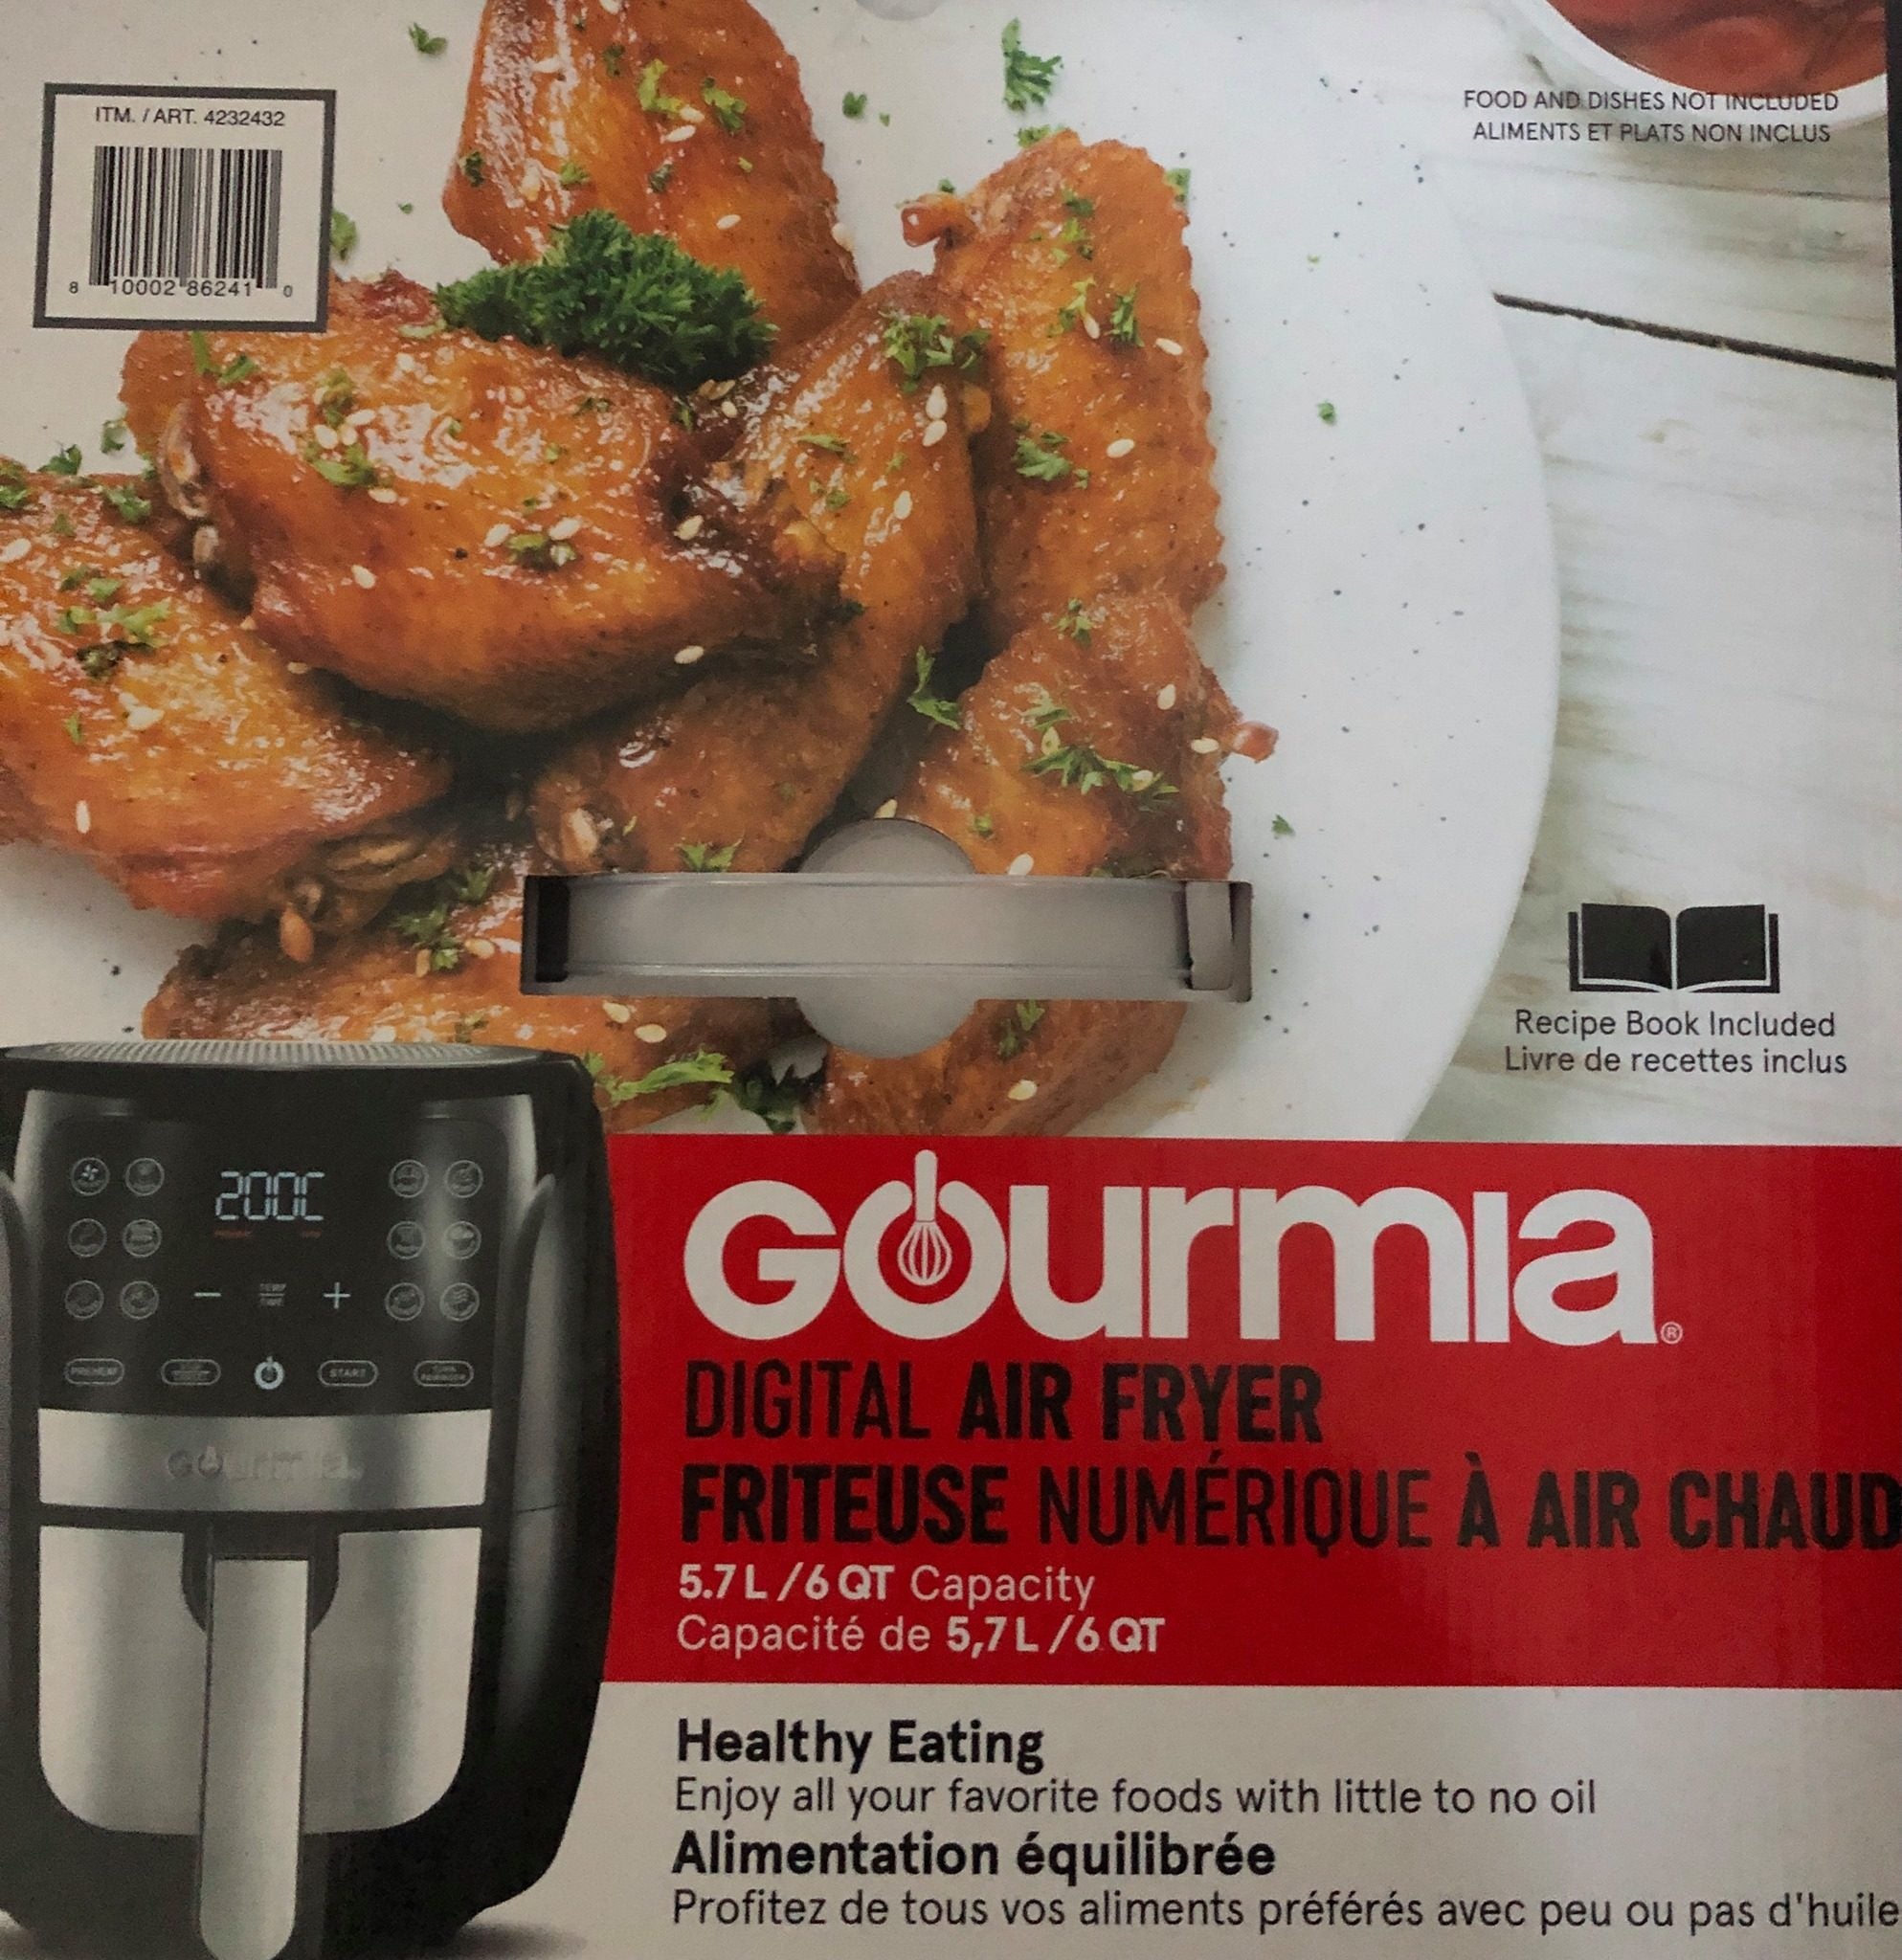 Review of Gourmia 6 Qt Air Fryer Costco Item 4232432 GAF698 (Food